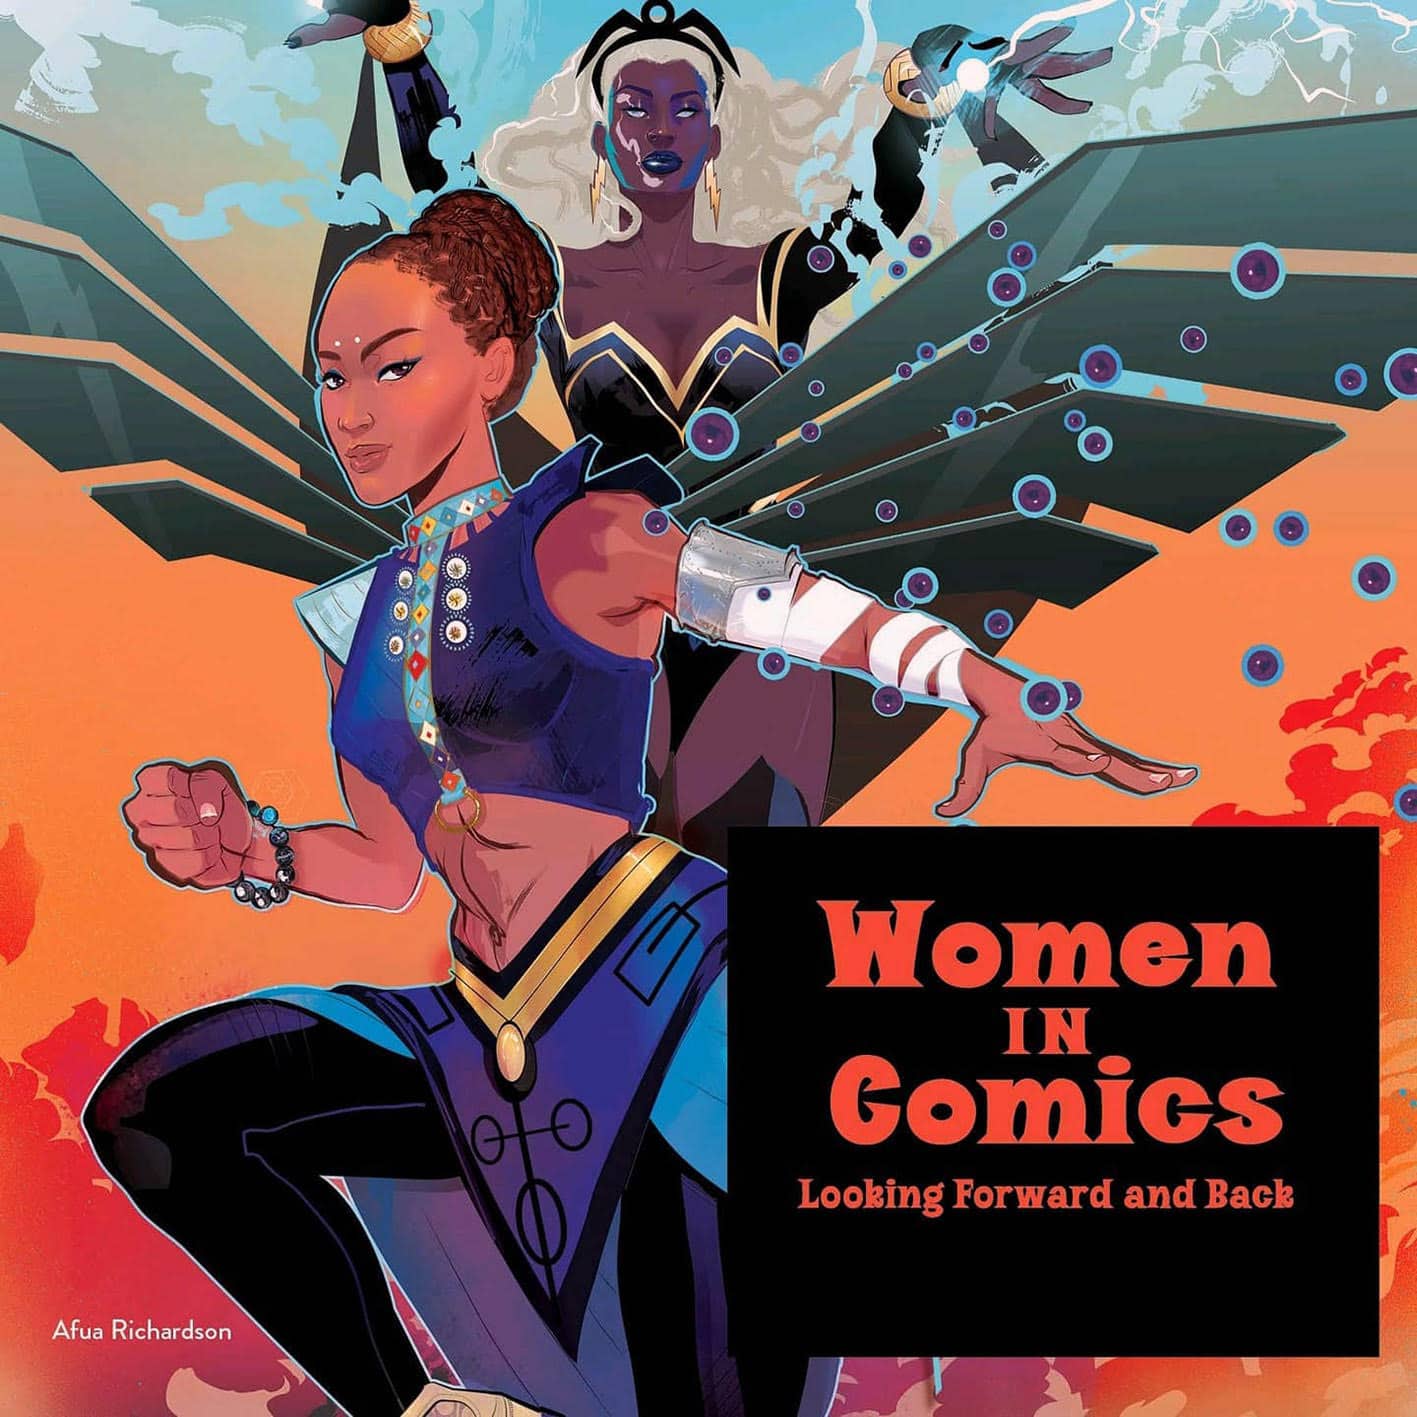 Women in comics